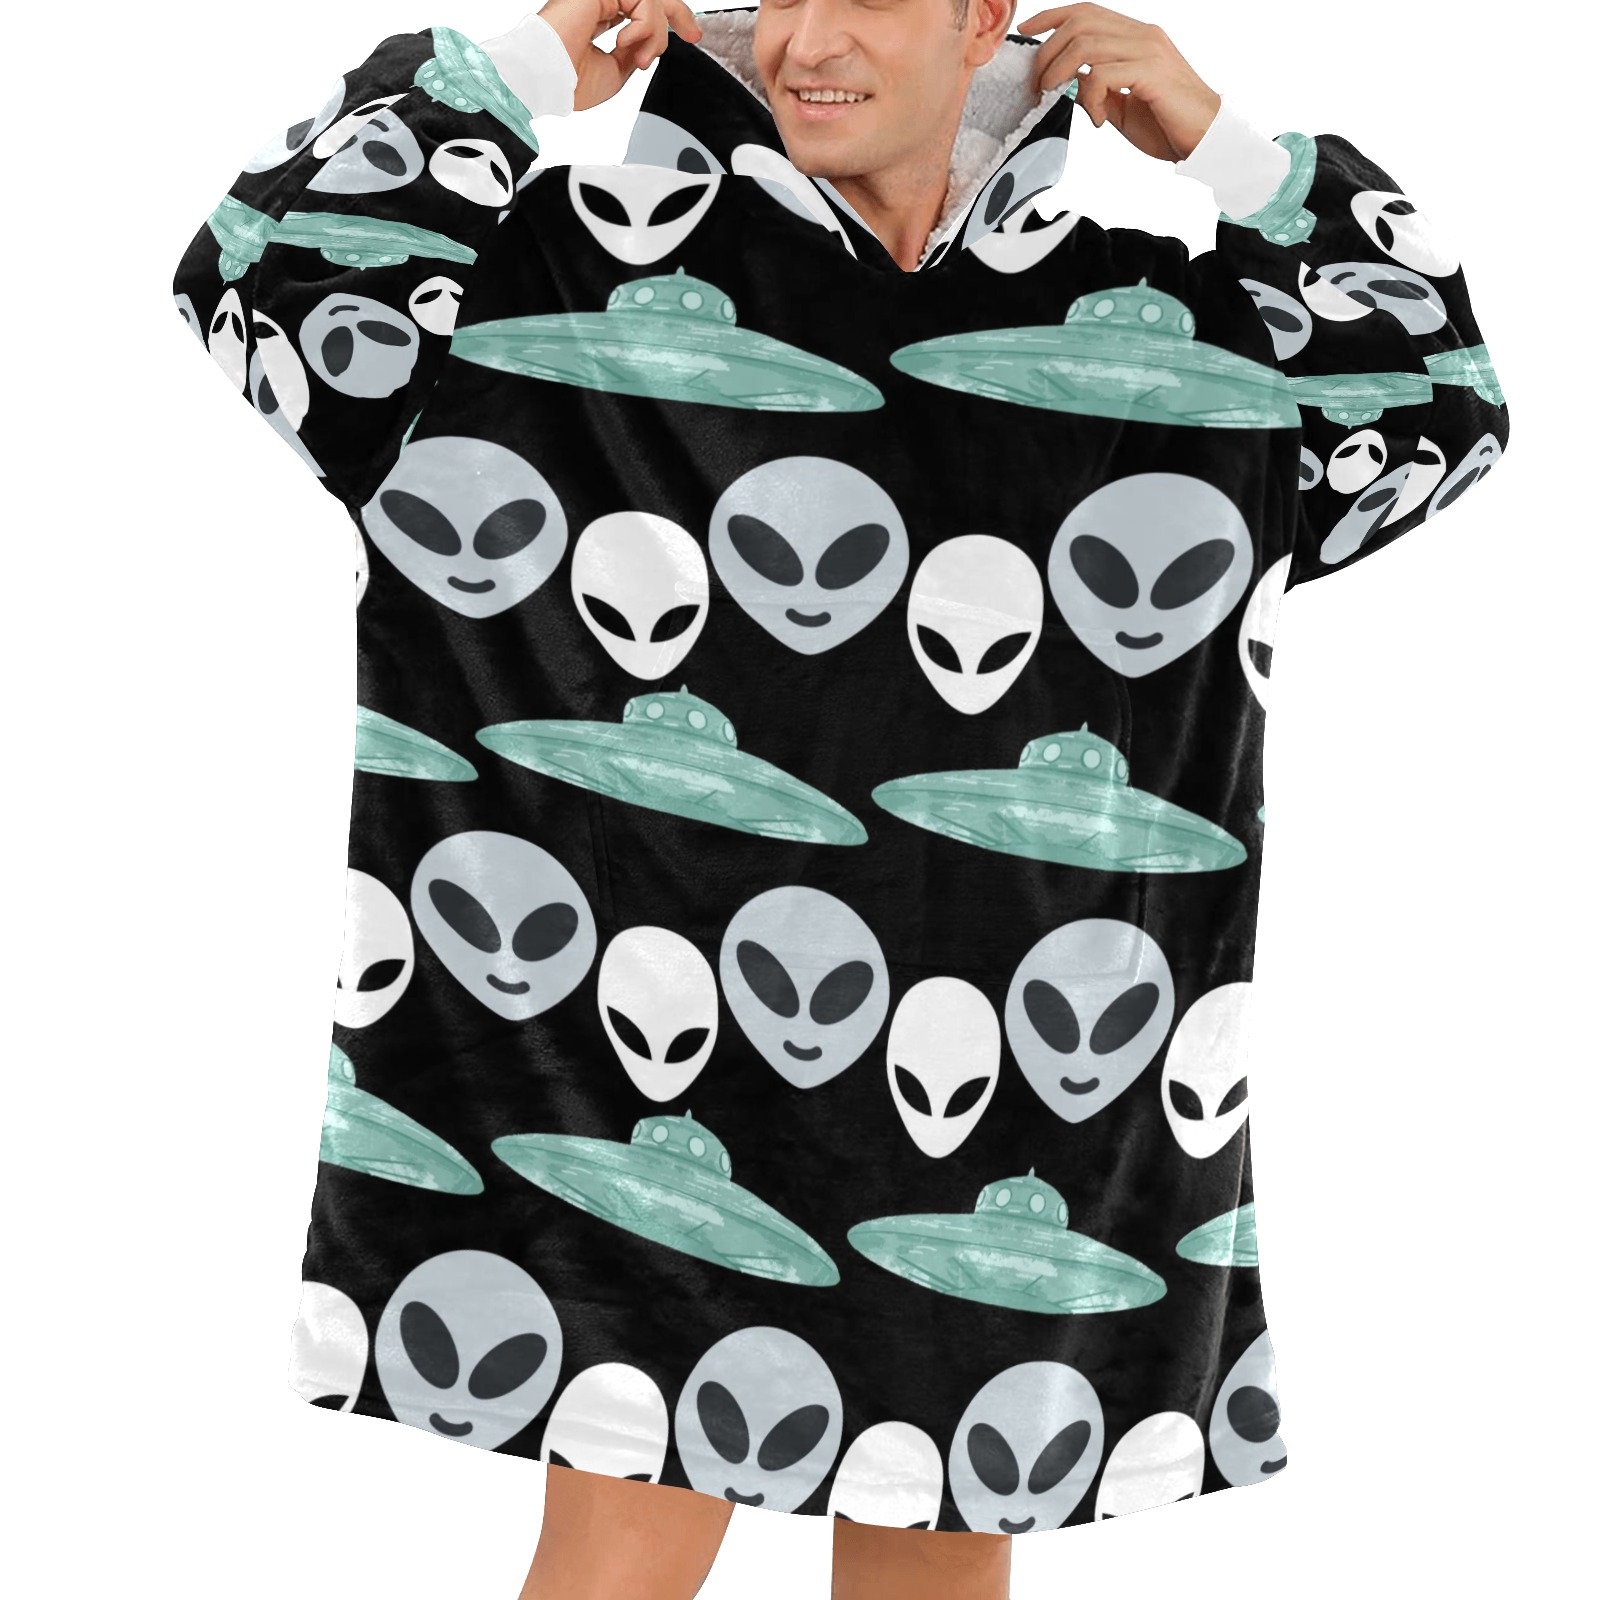 Aliens and UFO Blanket Hoodie for Men